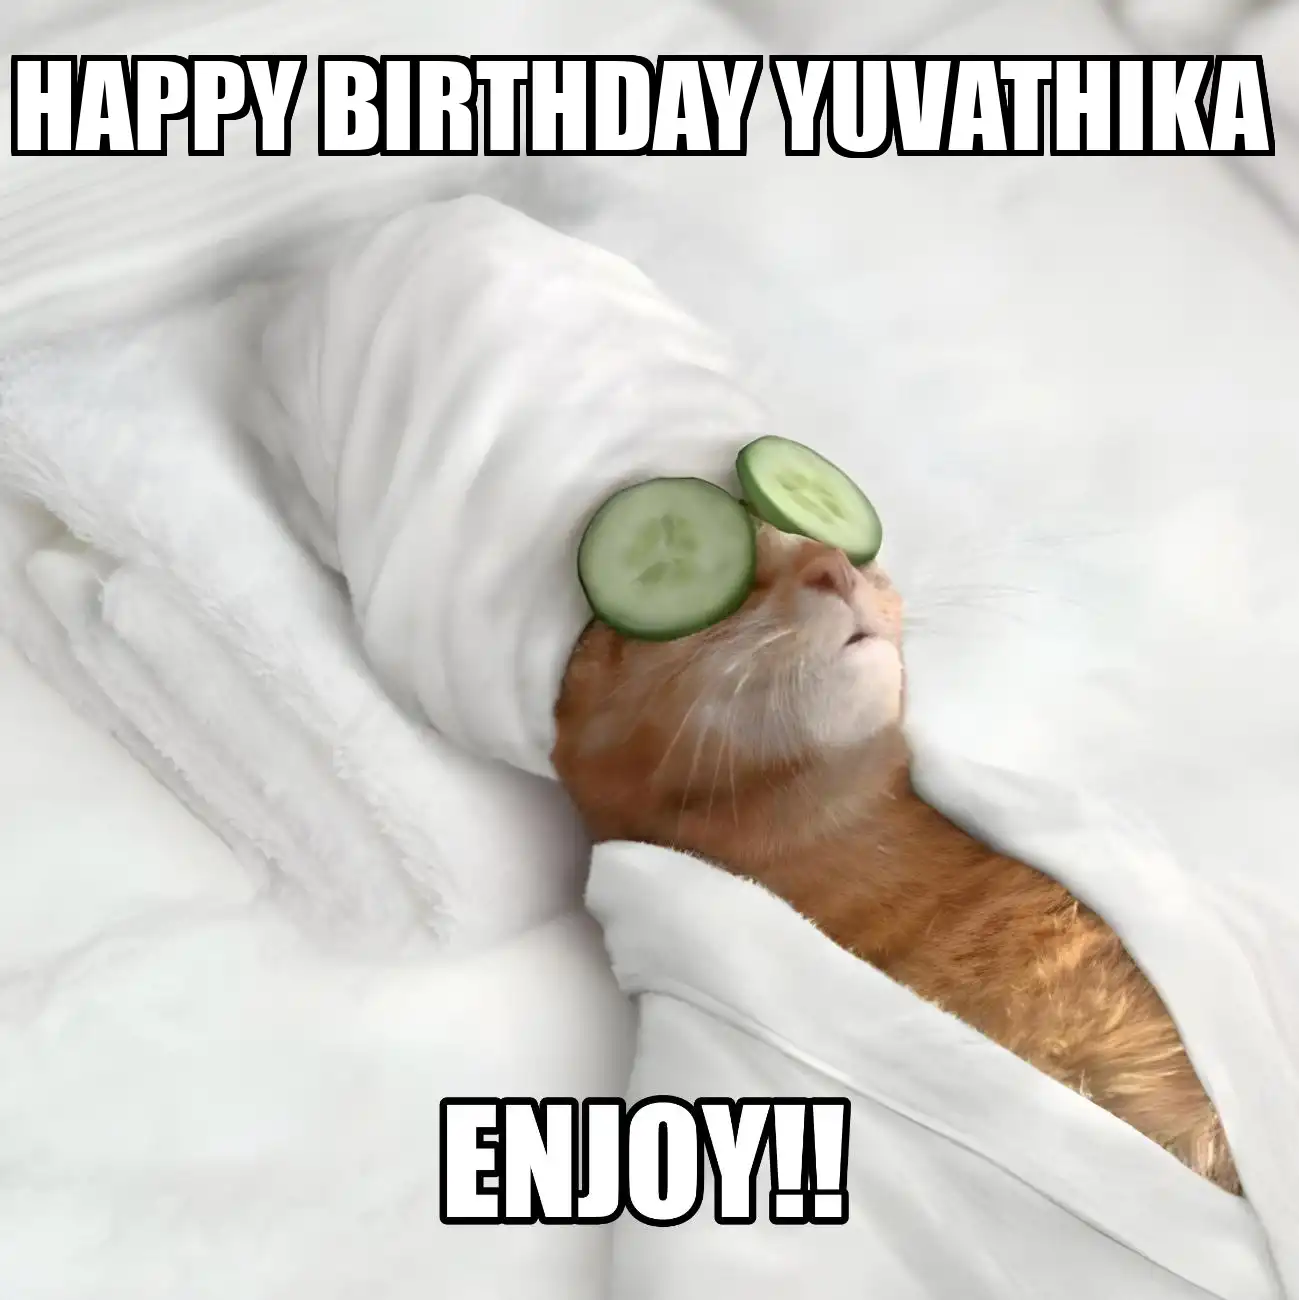 Happy Birthday Yuvathika Enjoy Cat Meme